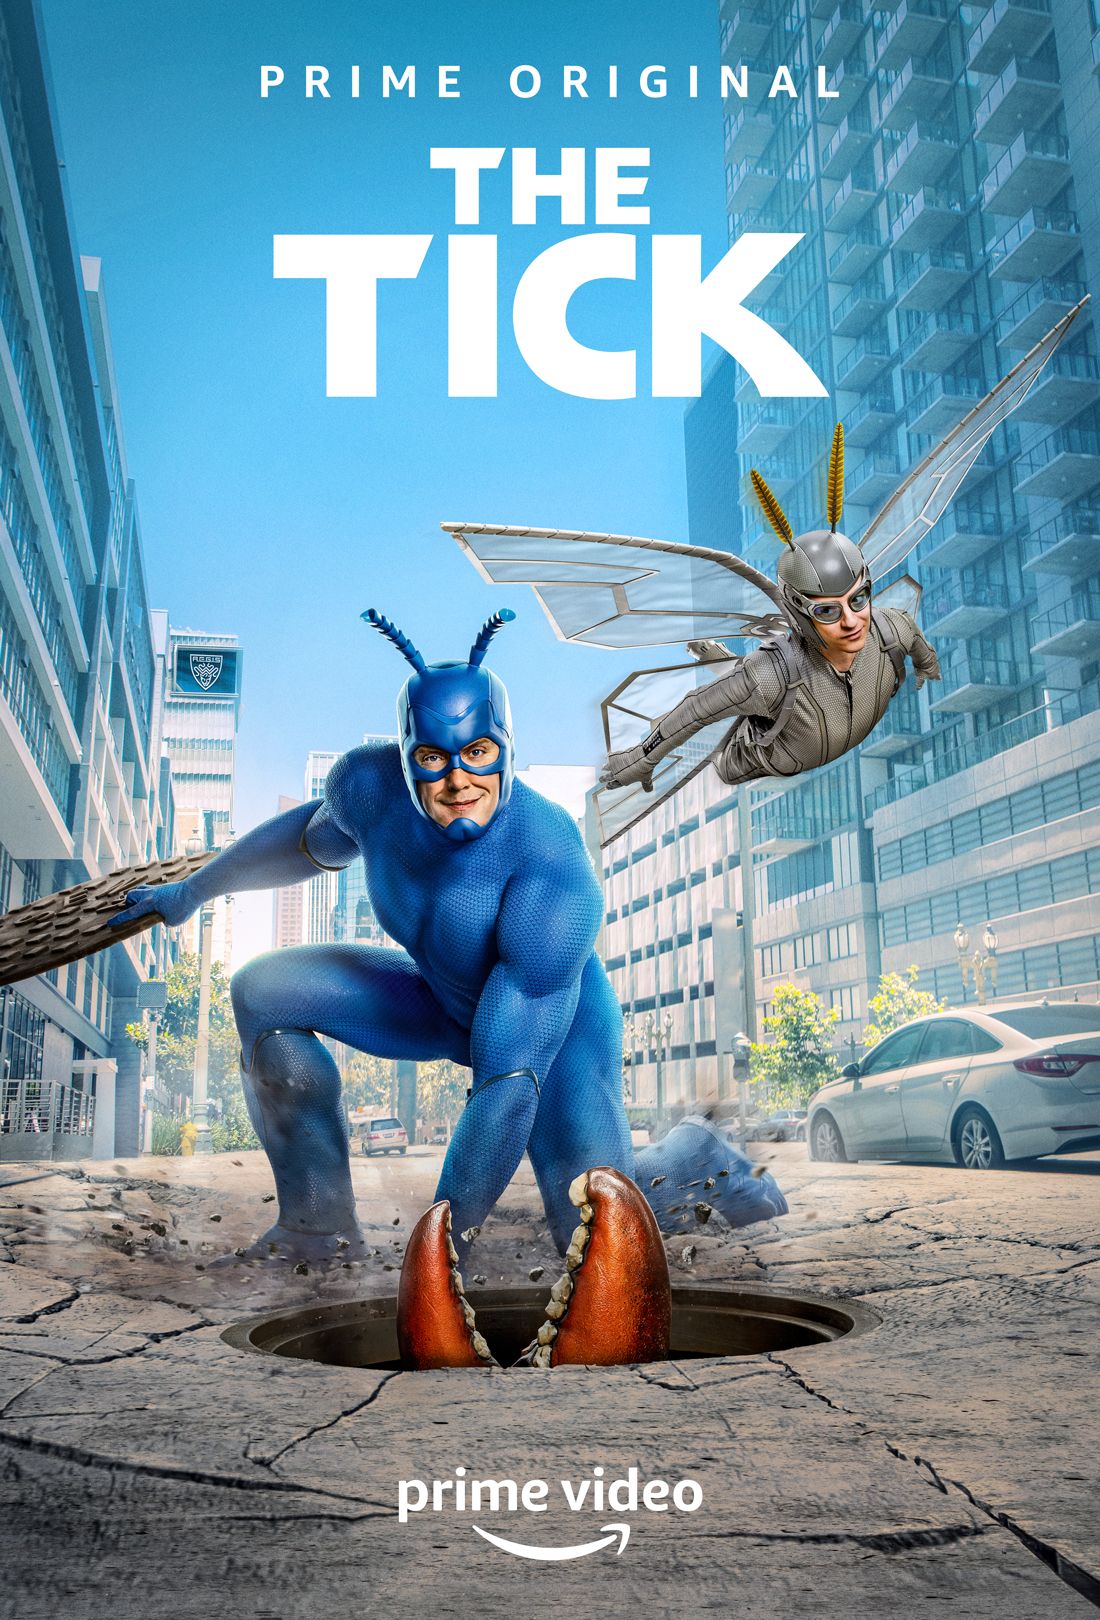 The Tick Season 2 Poster Amazon